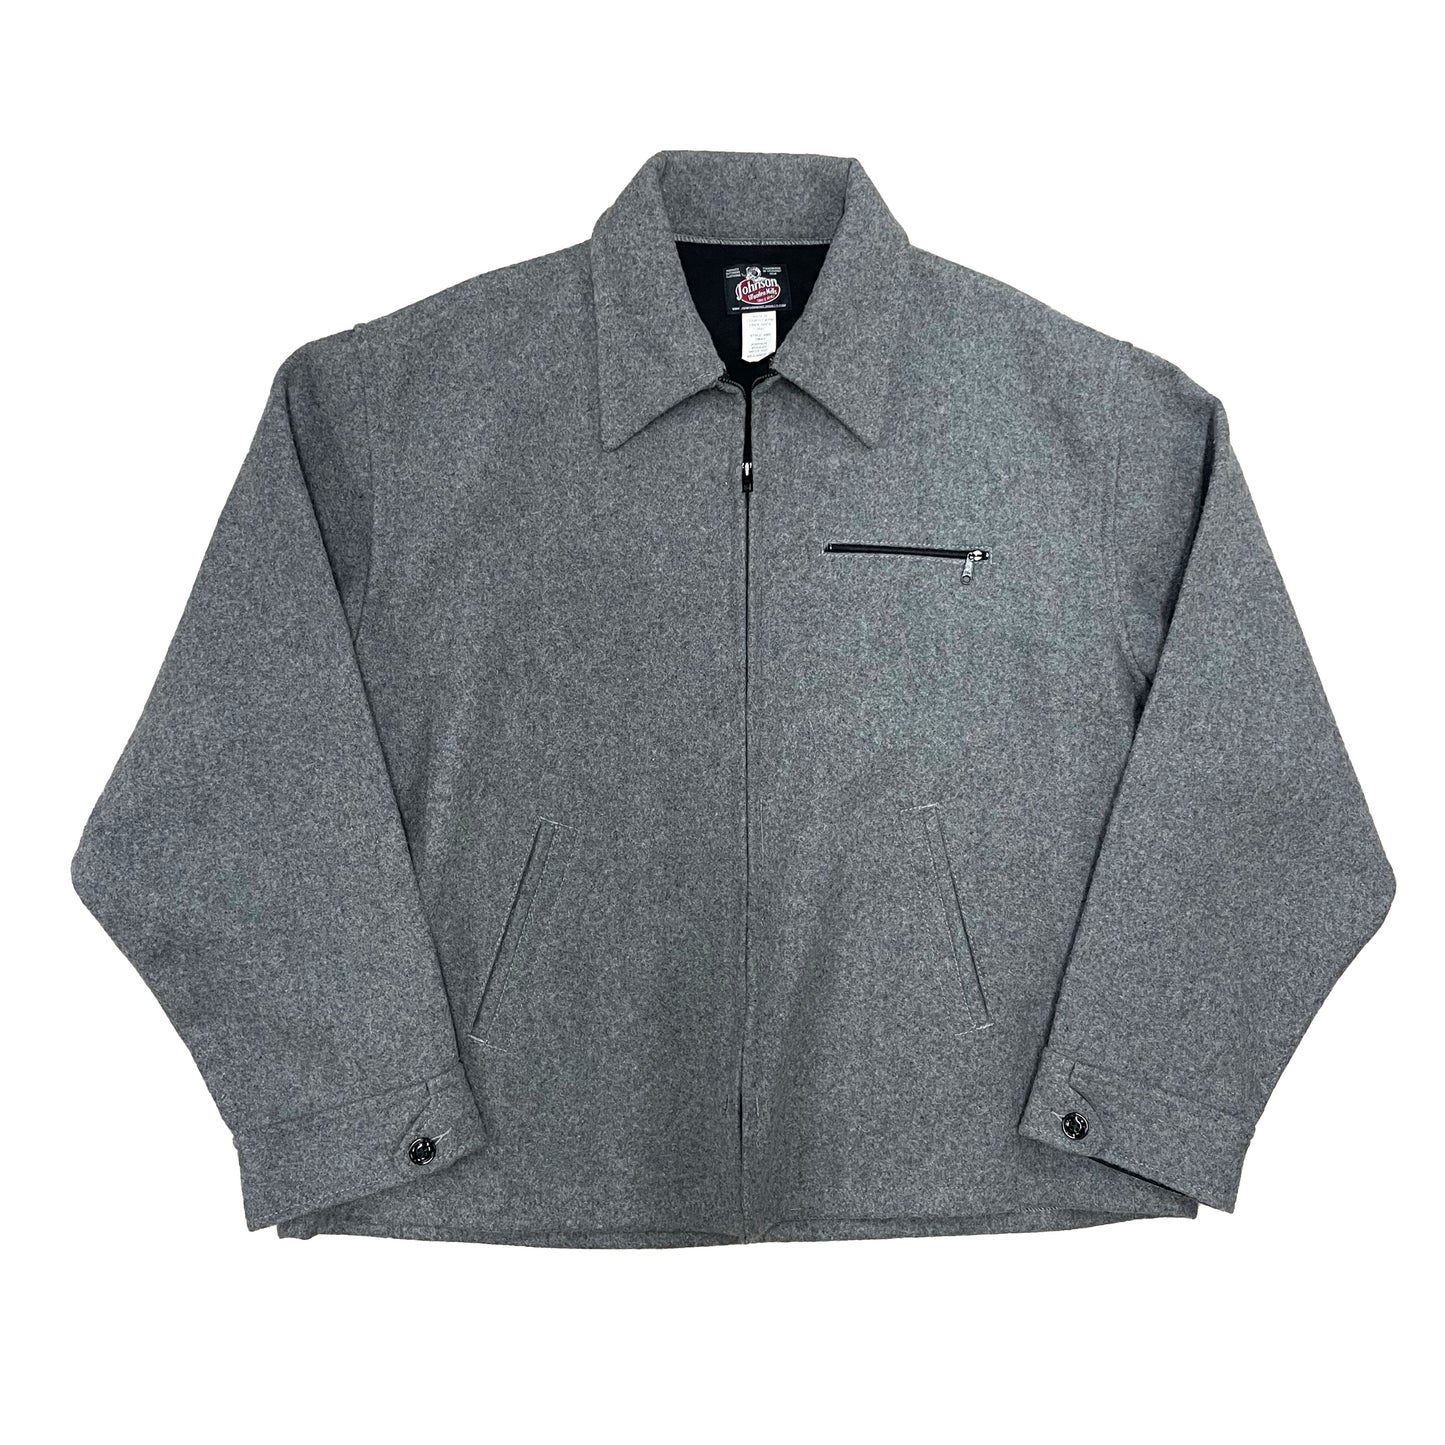 Gray wool field jacket